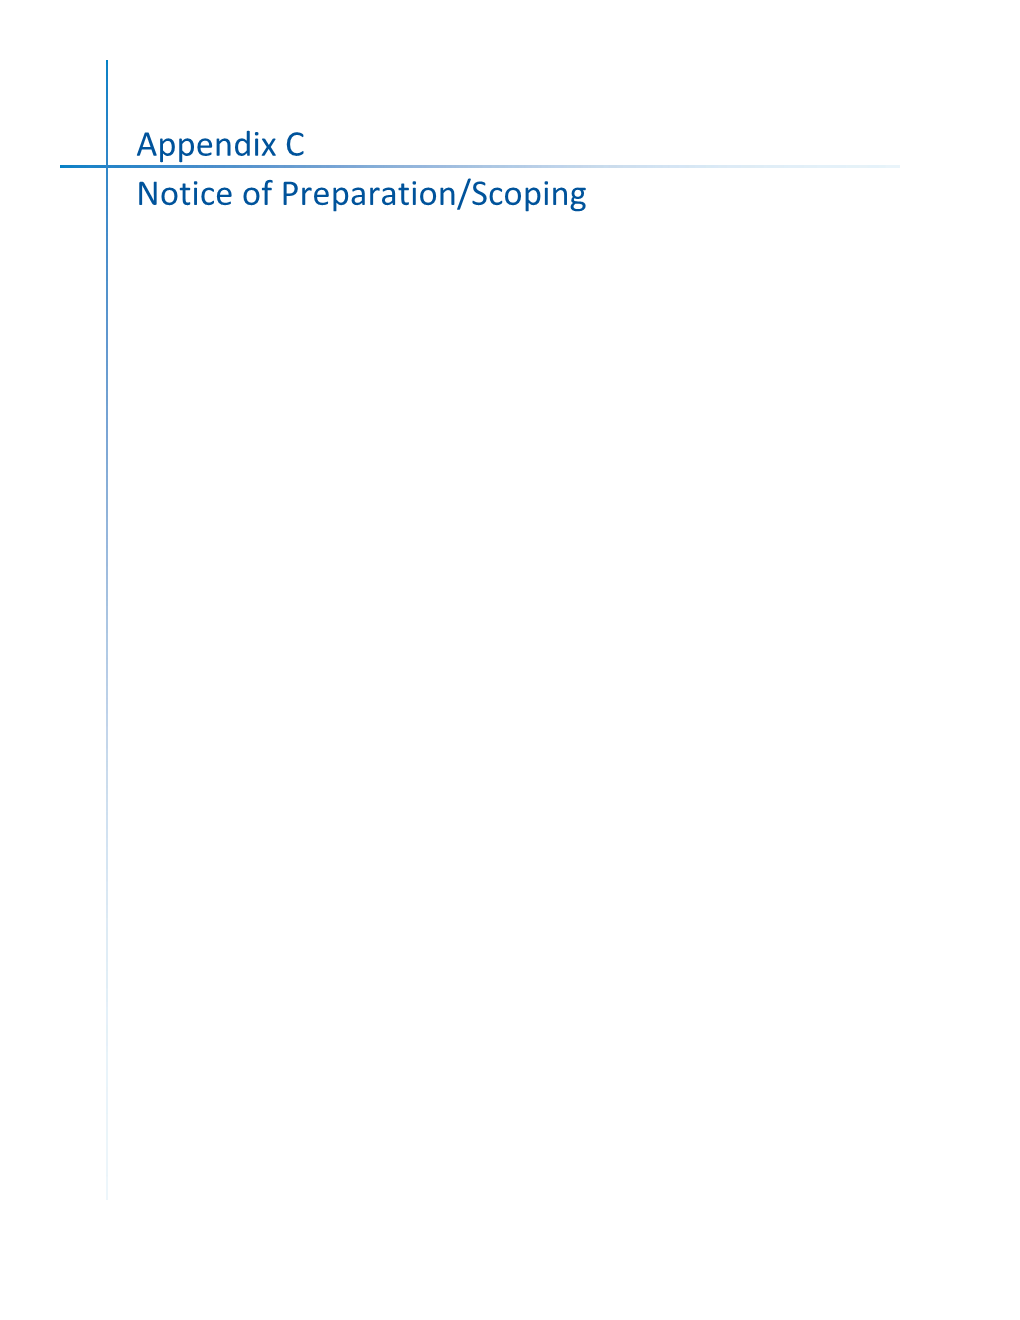 Appendix C Notice of Preparation/Scoping